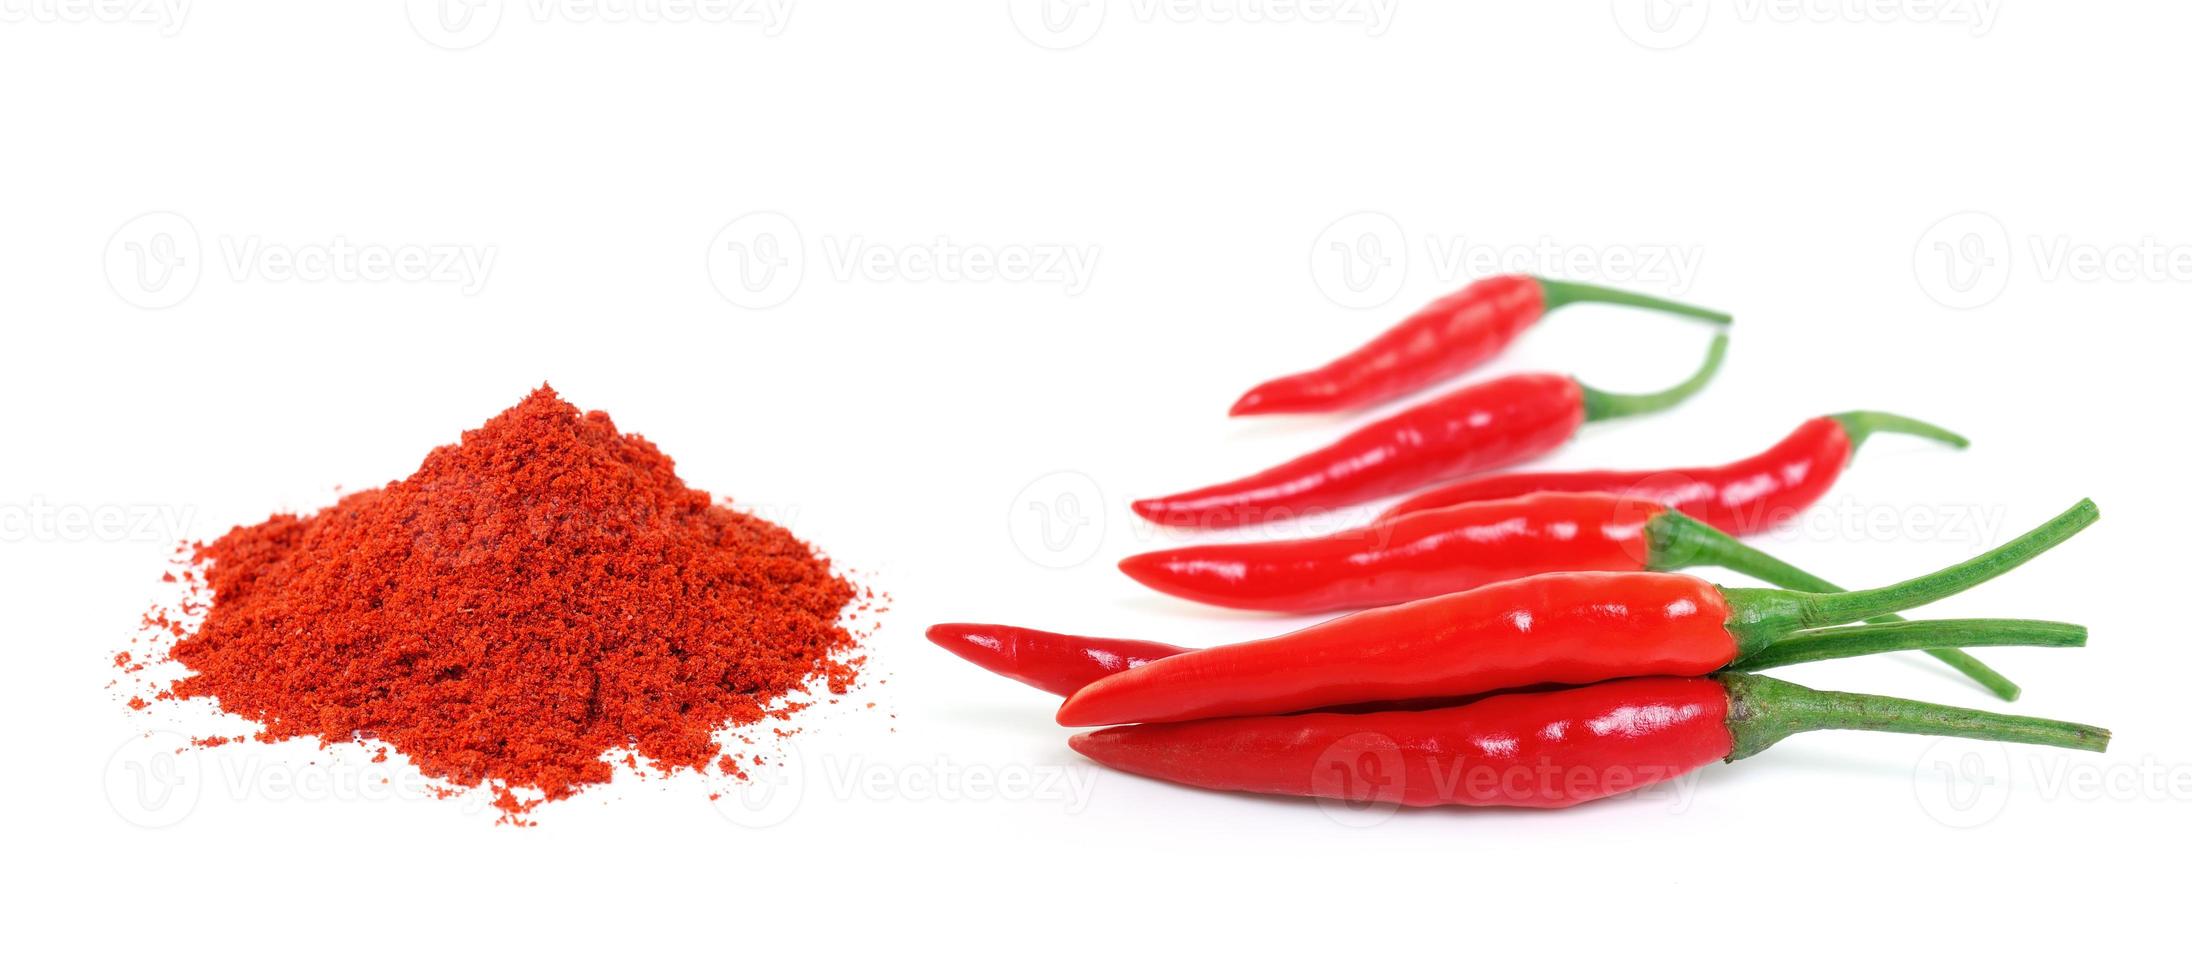 Red hot chili peper en cayenne peper geïsoleerd op een witte achtergrond foto